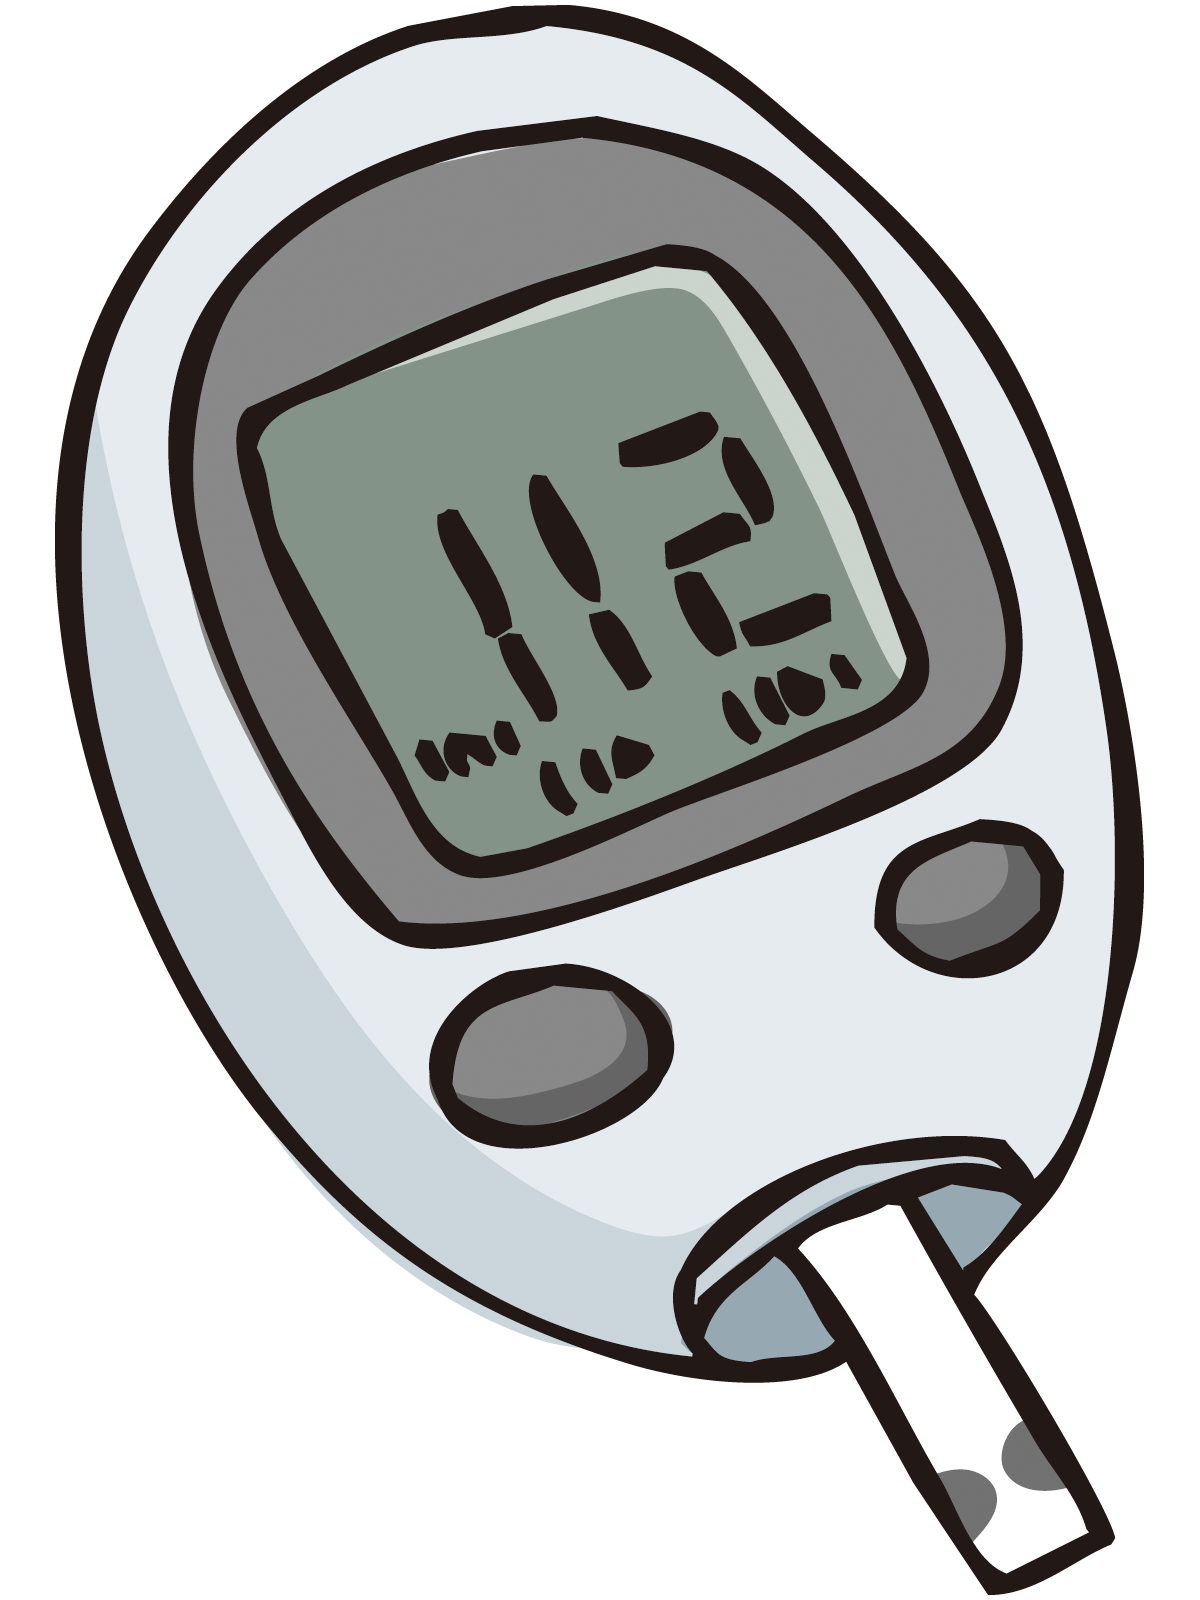 血糖を持続的に測定すると、早産時の血糖リスクが低下する